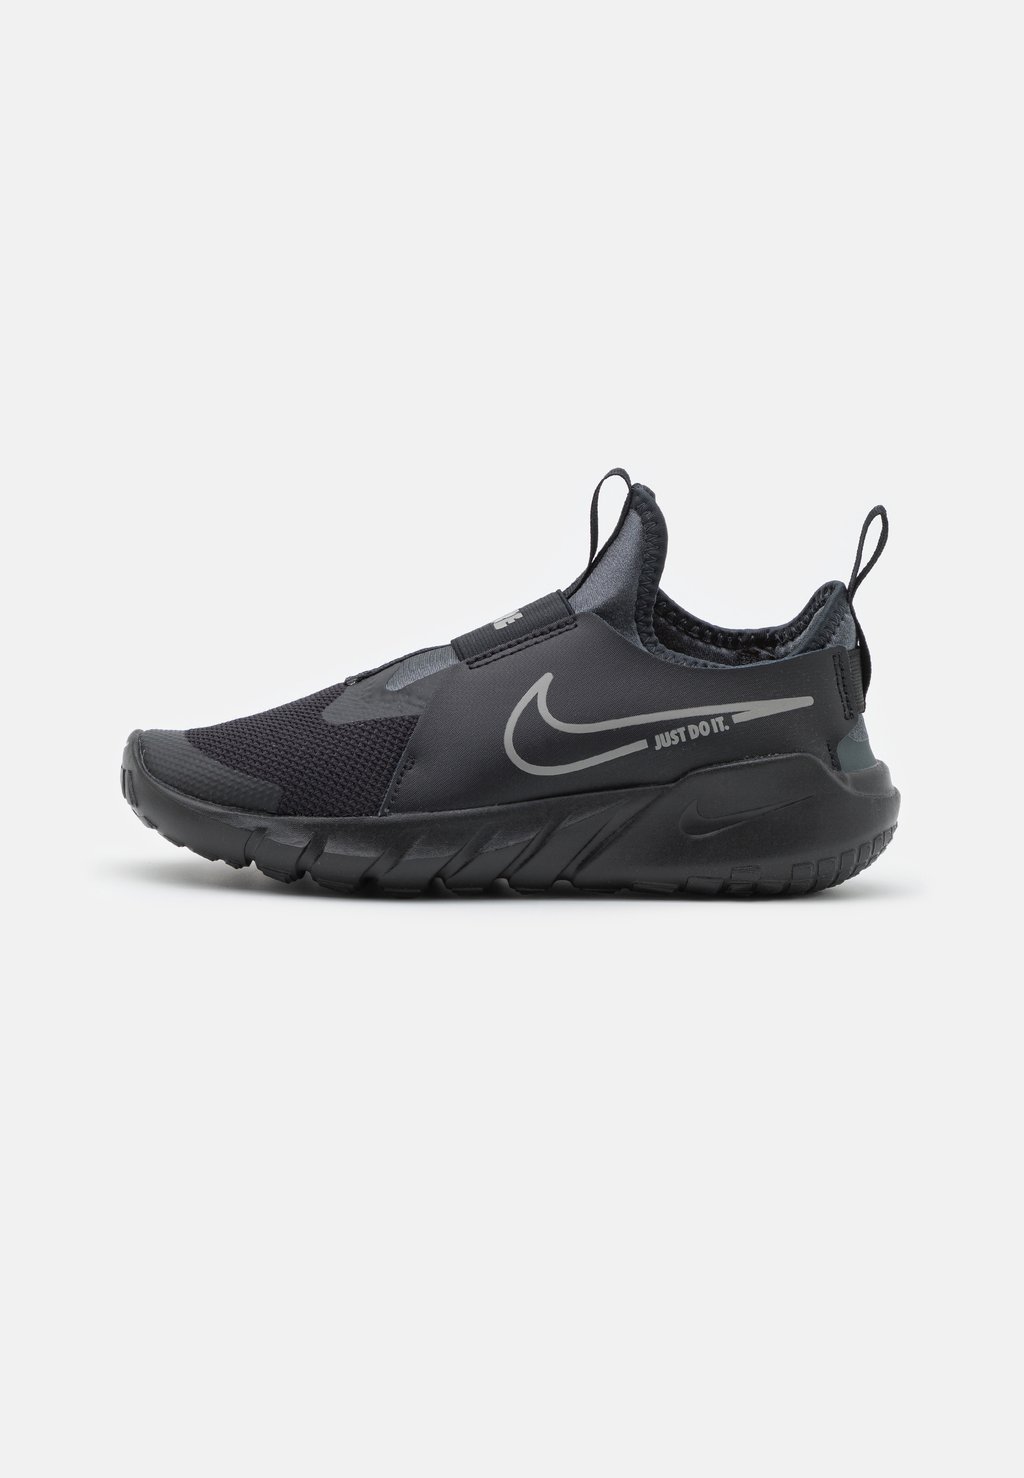 Нейтральные кроссовки Flex Runner 2 Unisex Nike, цвет black/flat pewter/anthracite/photo blue t6531 photo black 200 мл c13t653100